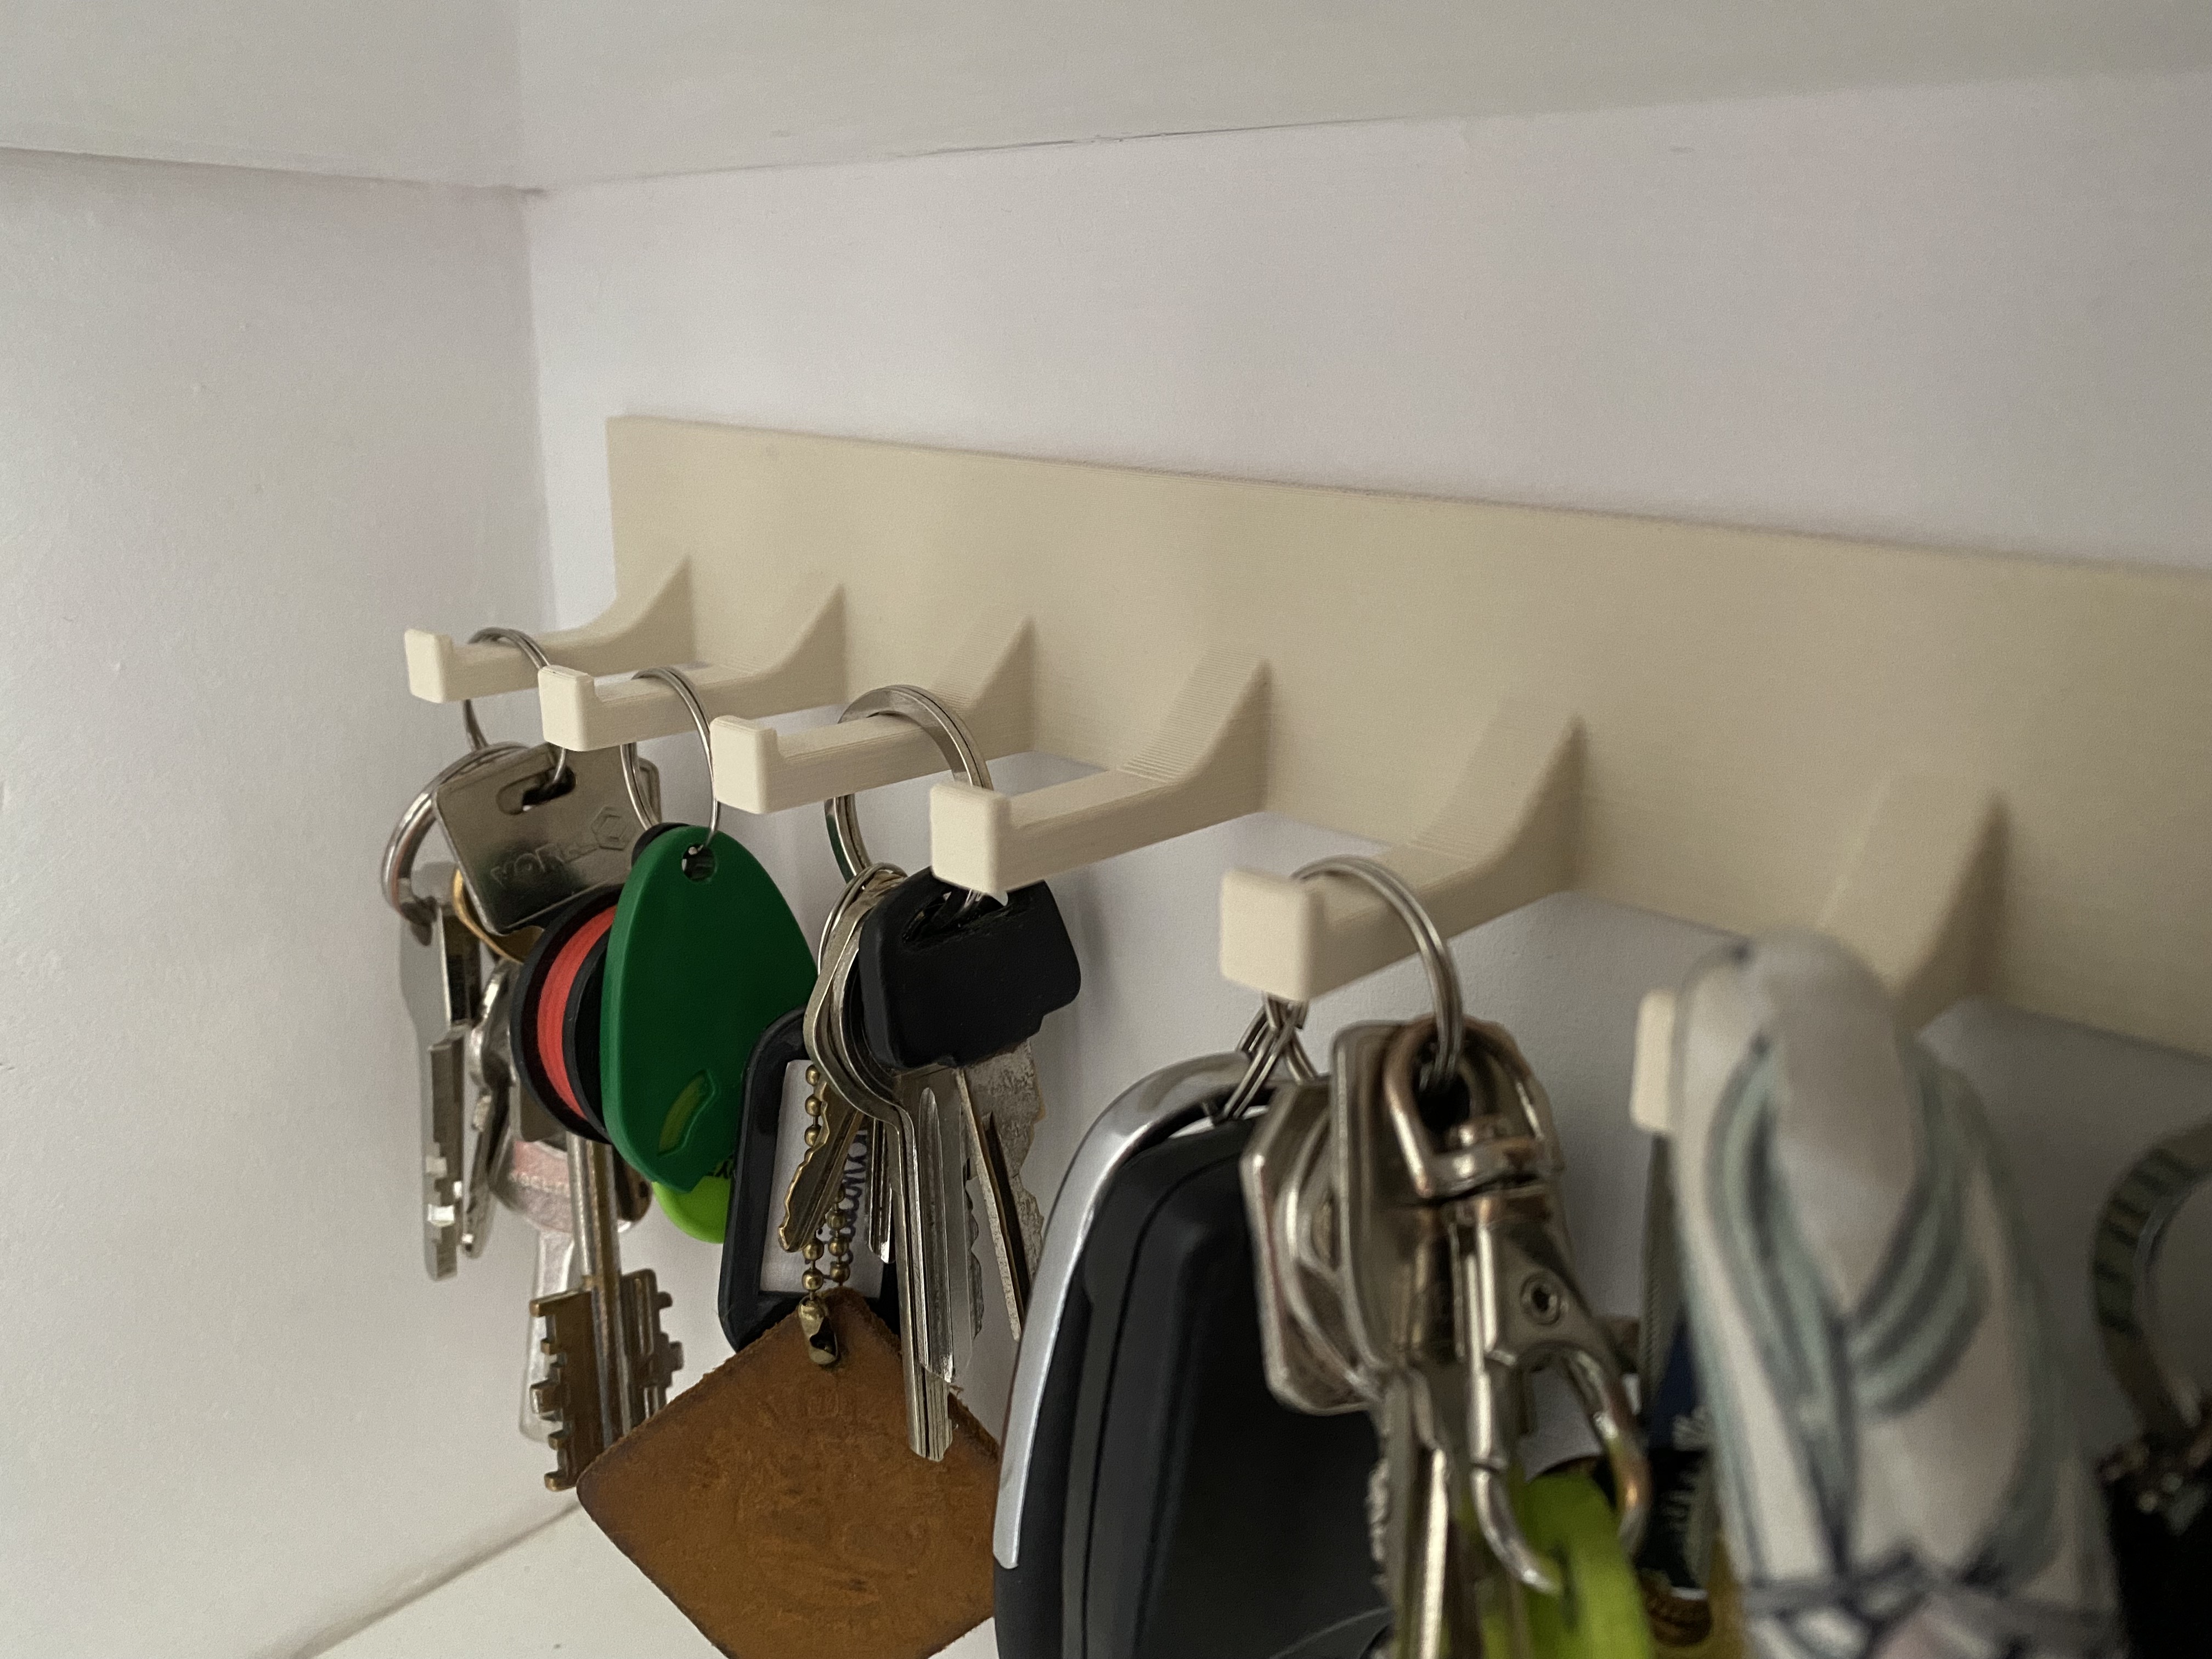 Key wall holder/hanger for 8 keys